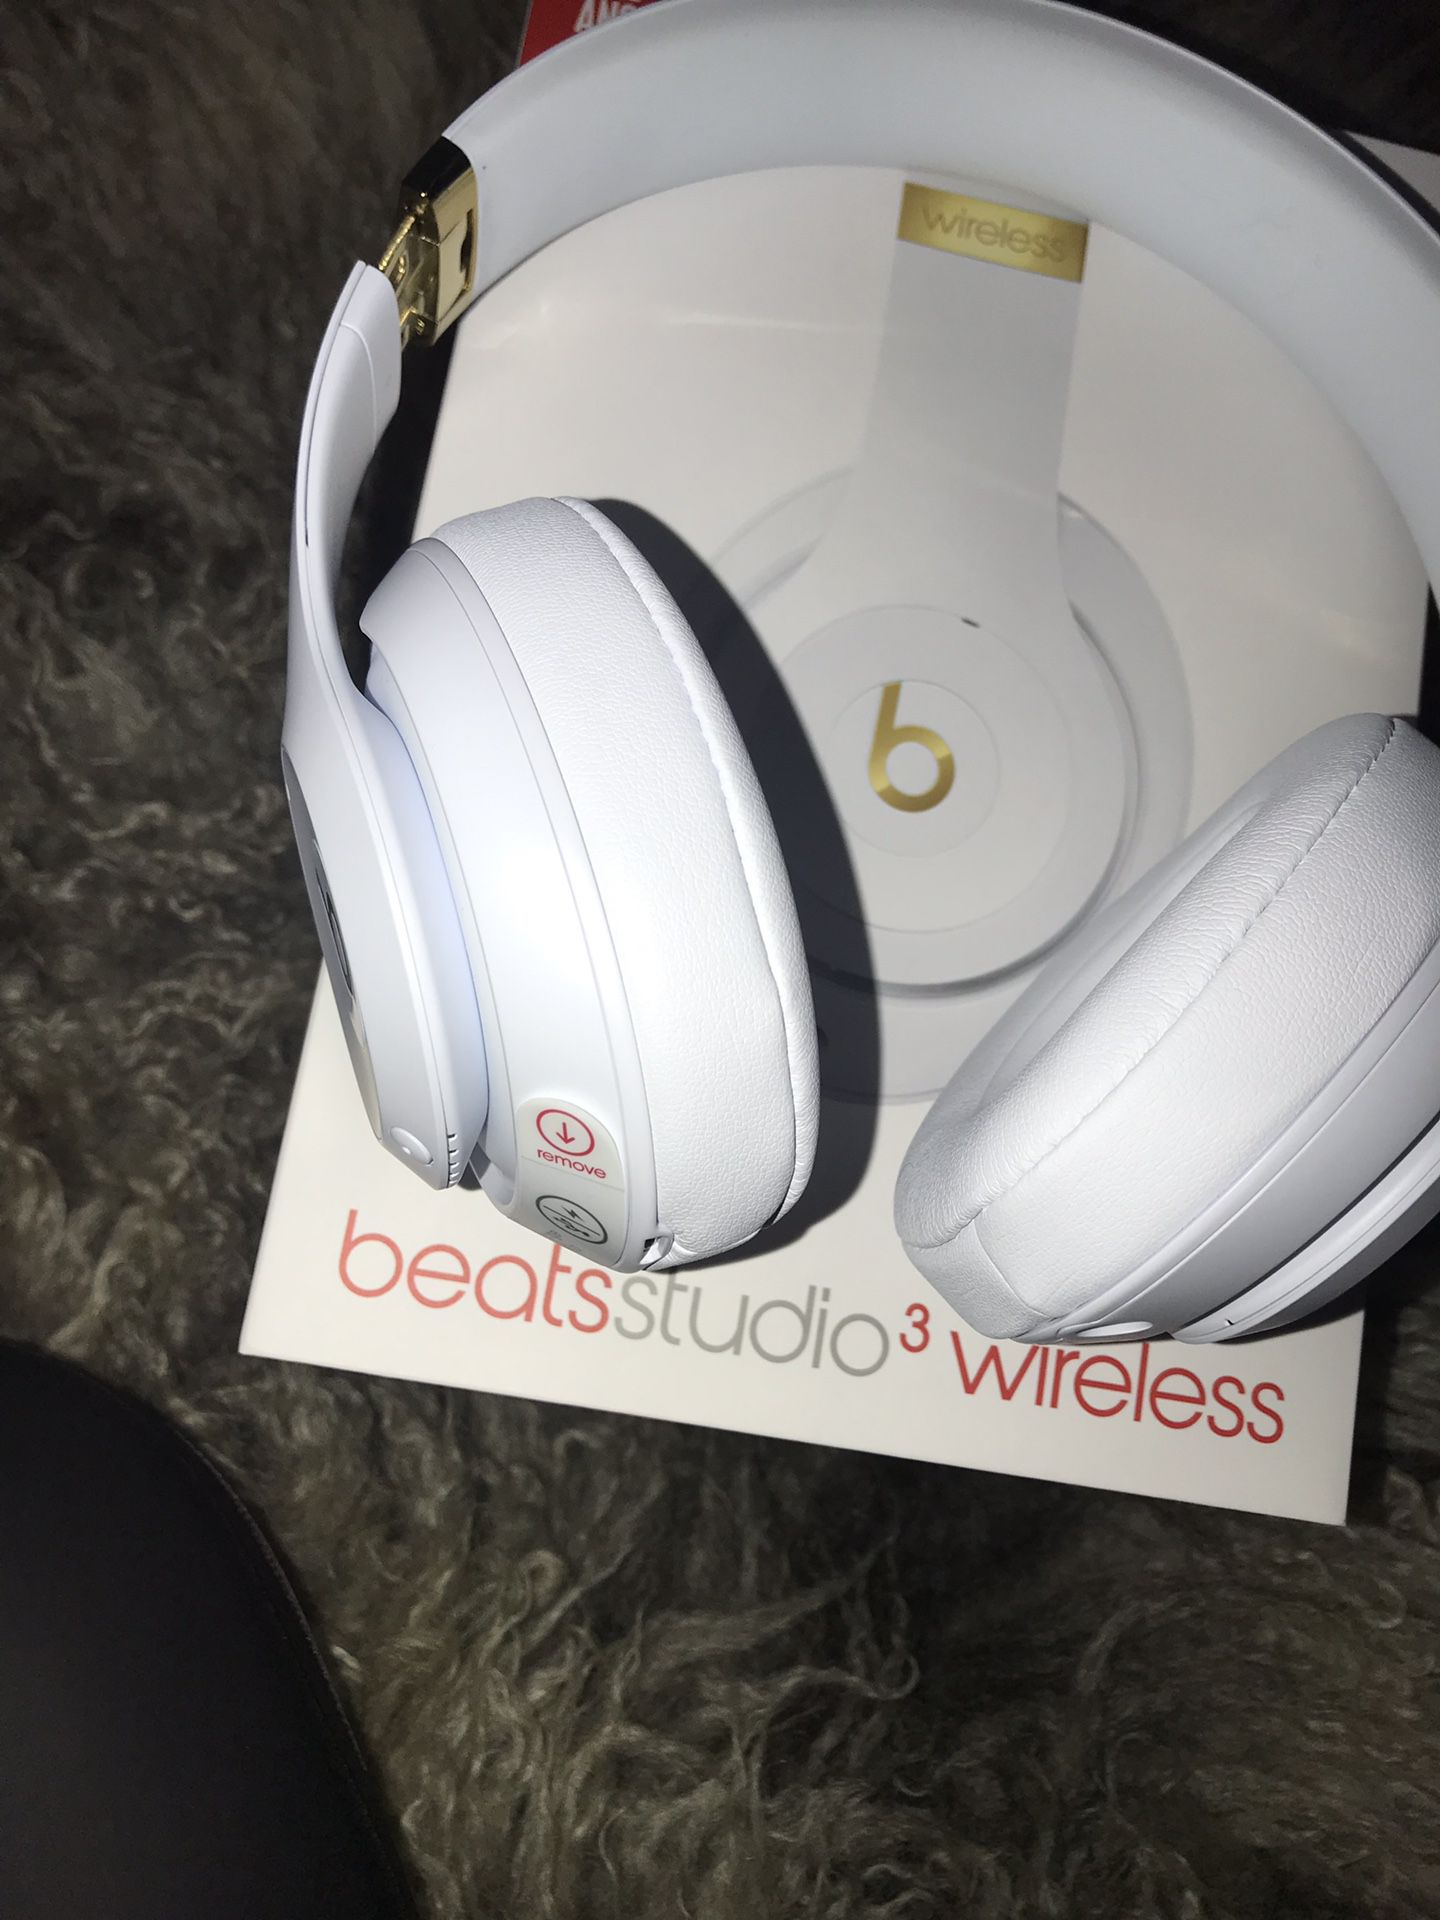 Beats studio 3 wireless headphones